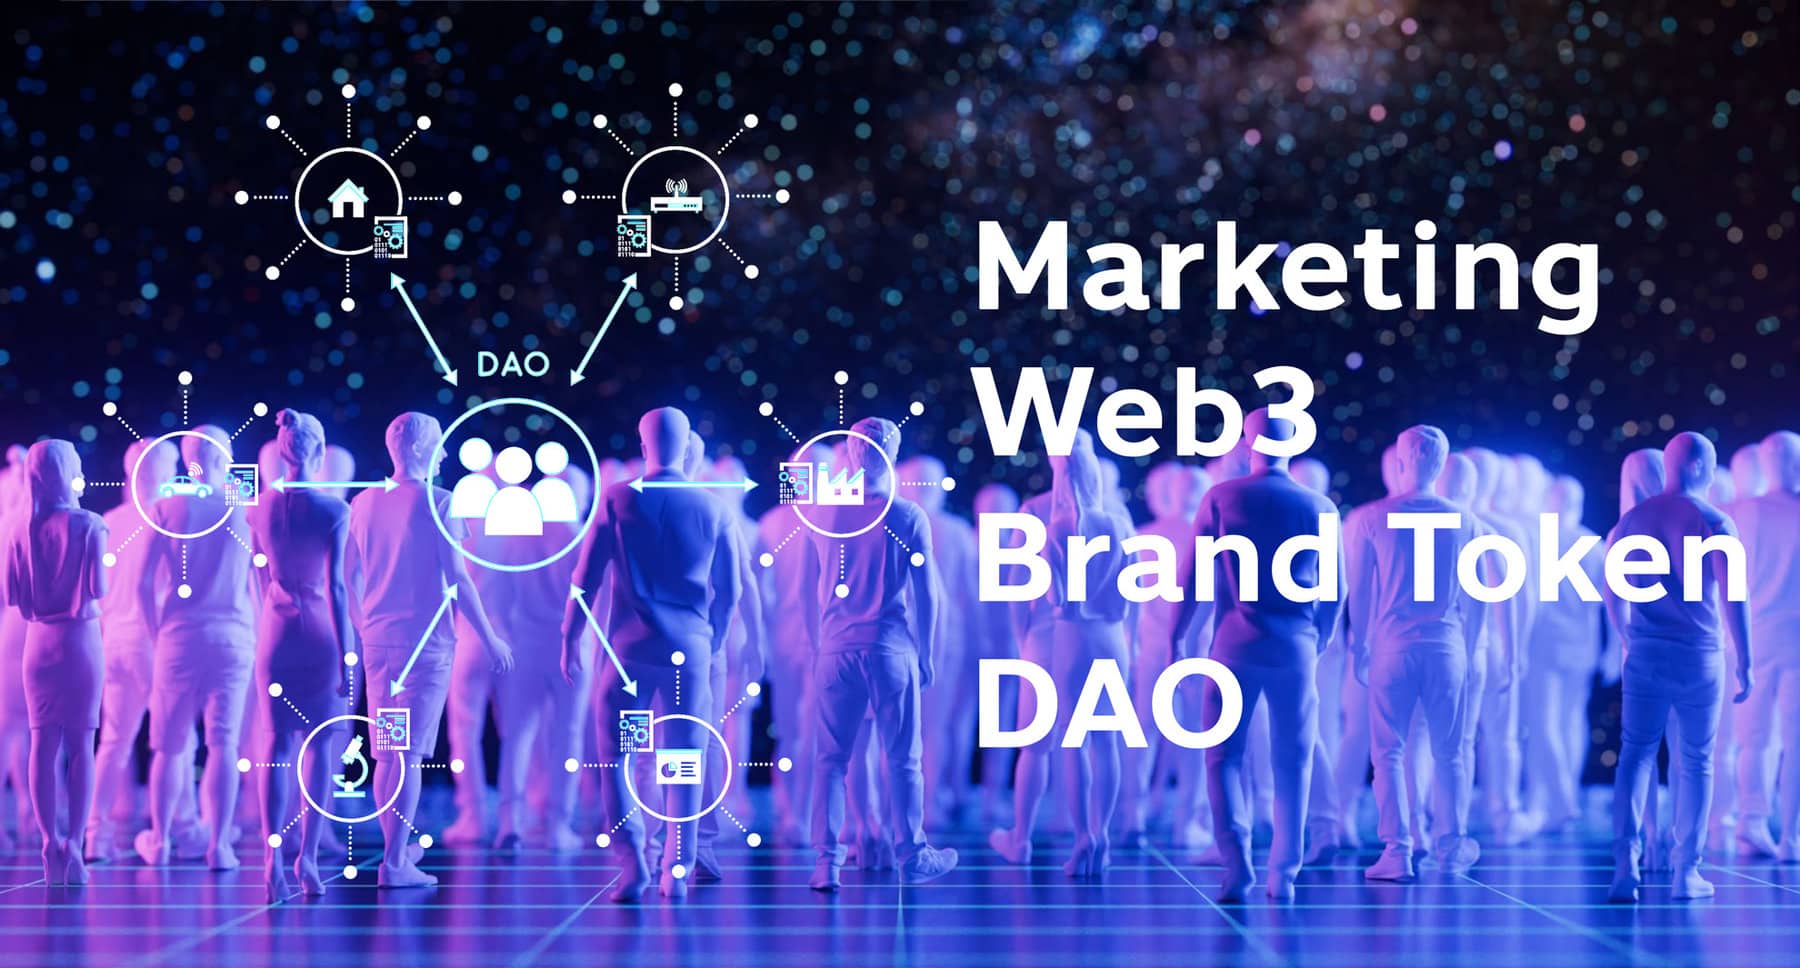 การตลาดยุค Web3 Marketing ที่ Community-Driven Business จาก Superfan ที่กำหนดแบรนด์ผ่าน Brand Token และ DAO Decentralized Autonomous Organizations